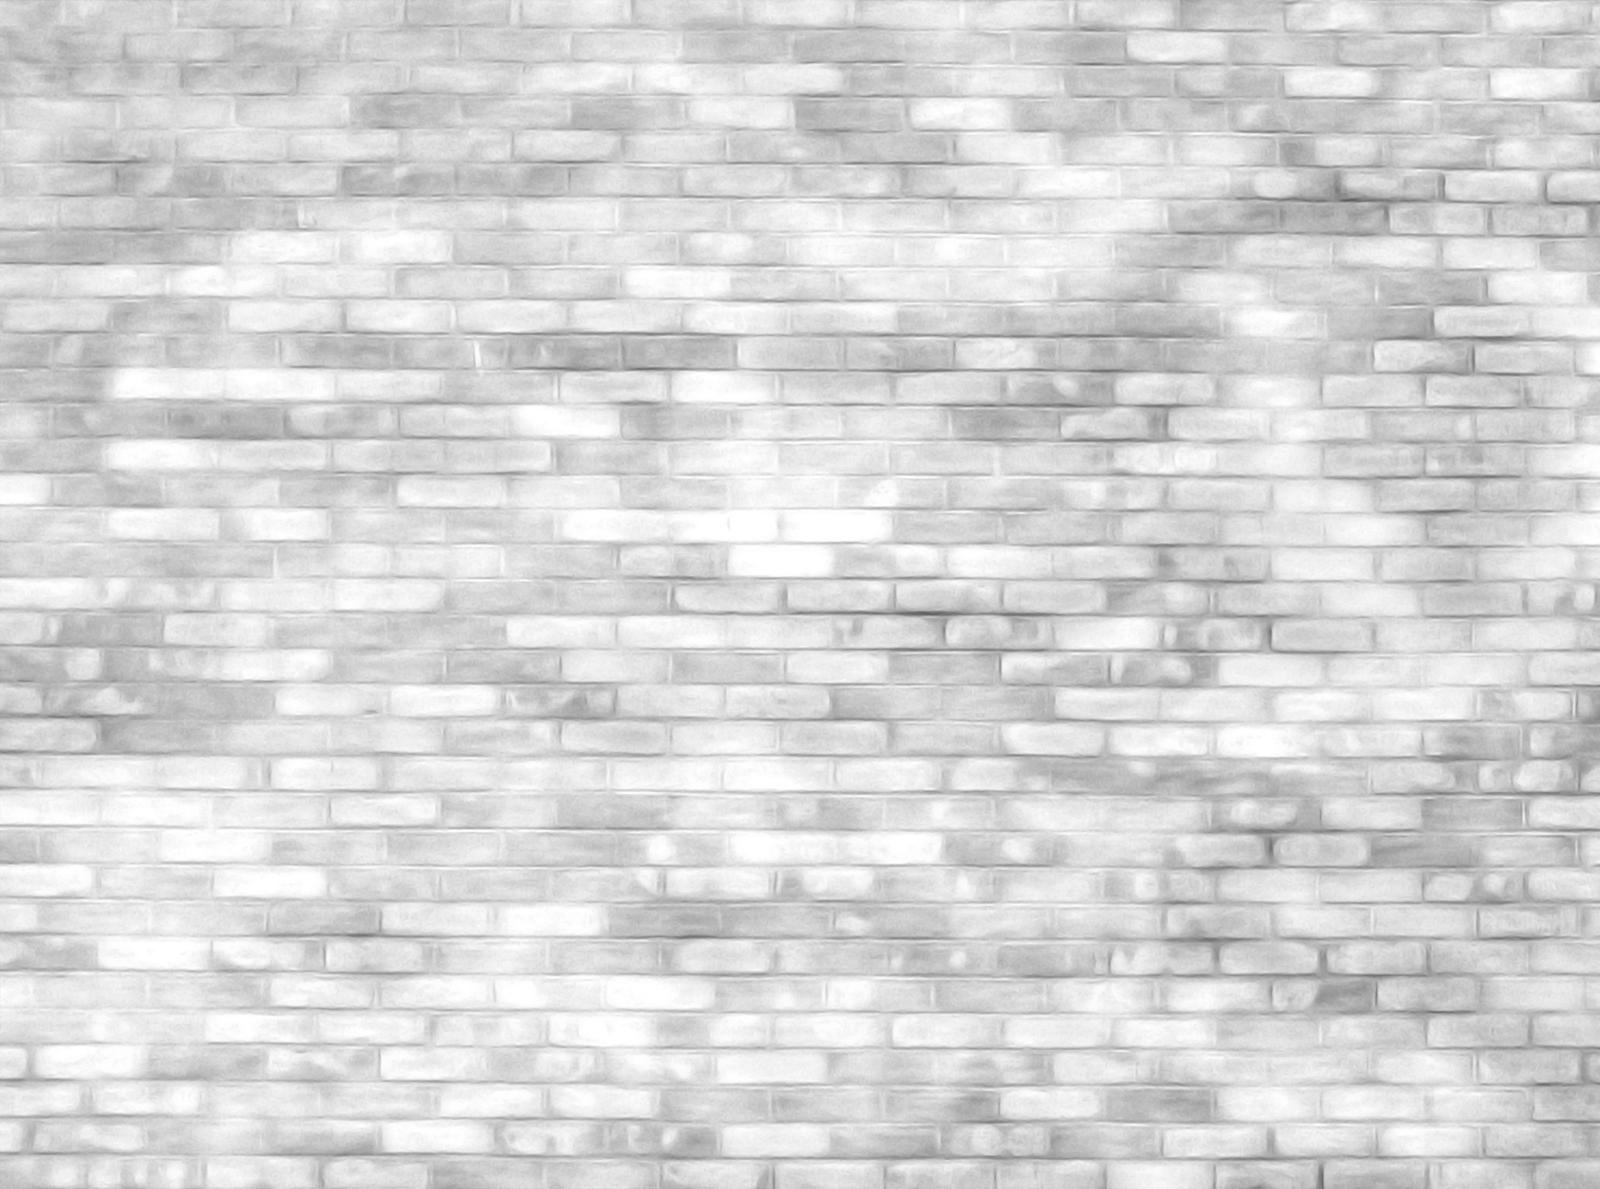 Brick Wall 07